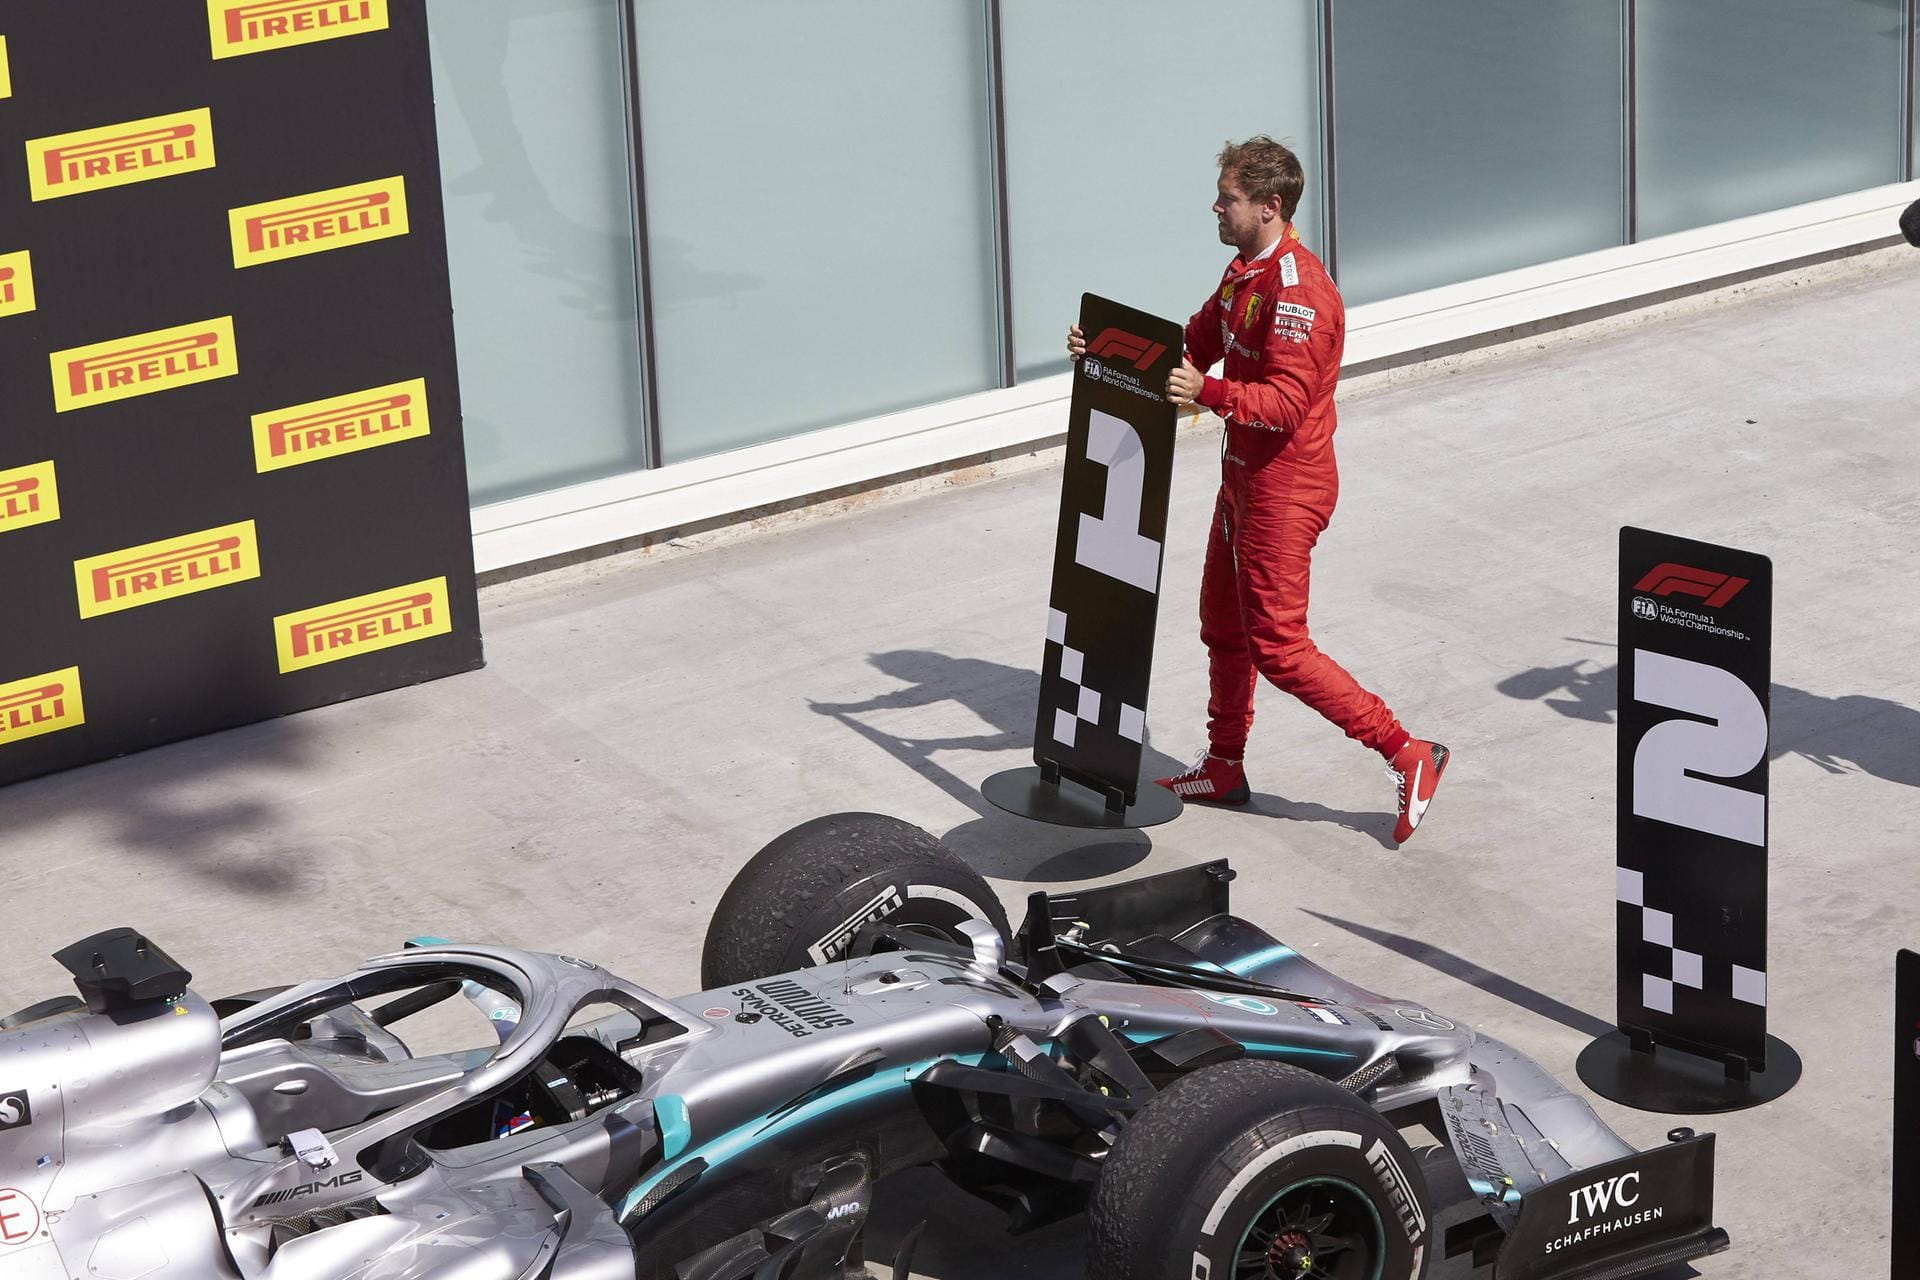 ... und stelle sie vor die Fläche, wo Sebastian Vettels Auto hätte stehen sollen. Der Heppenheimer hatte seinen Wagen jedoch nicht gewogen und musste ihn deshalb zurückschieben.